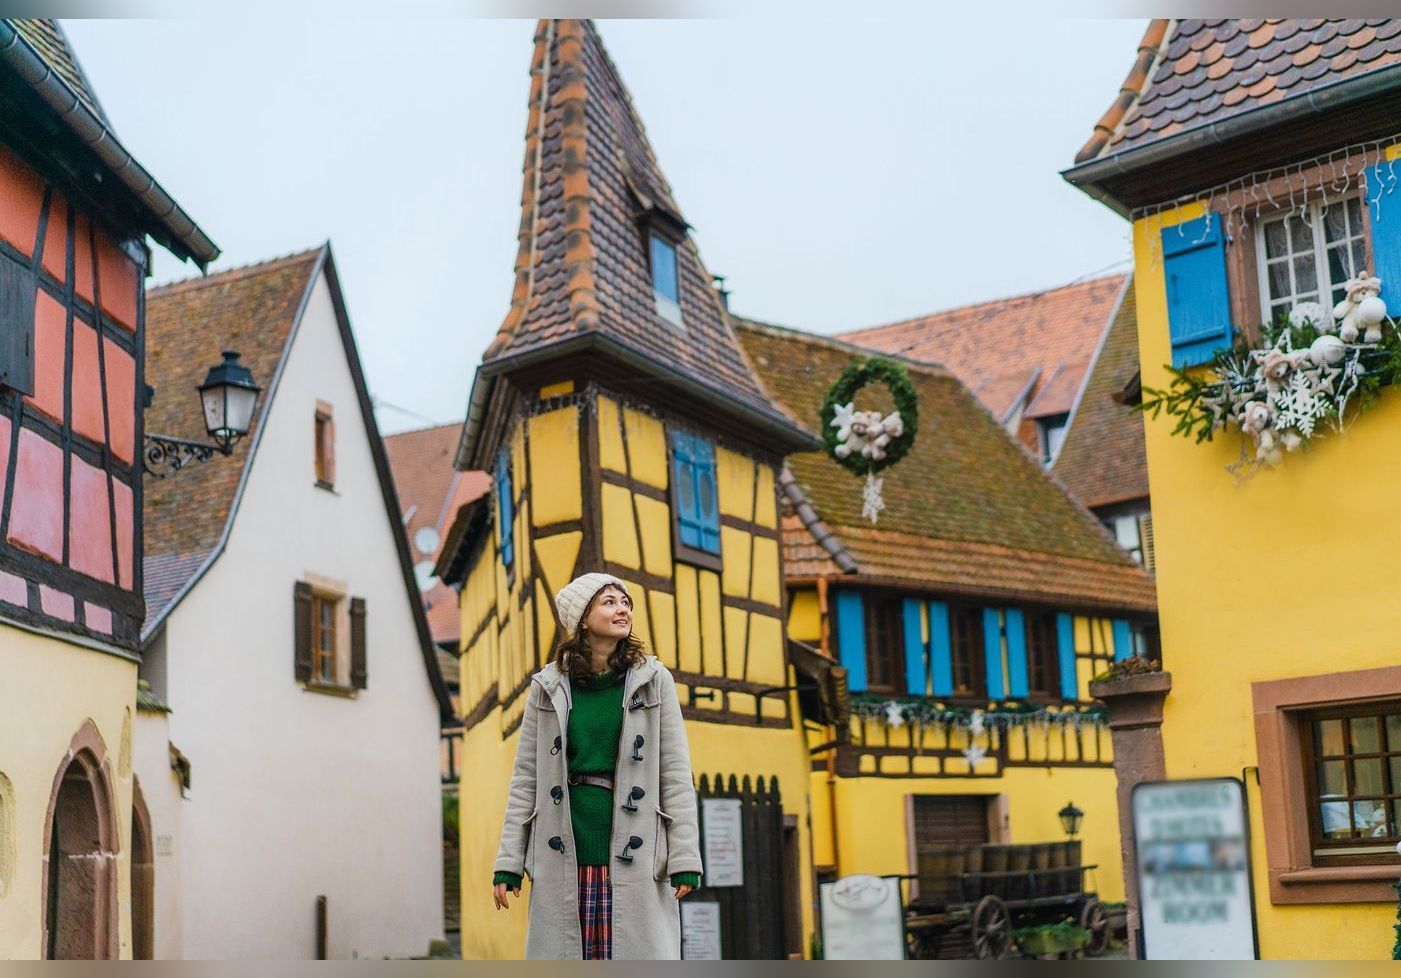 Cette ville, située en Alsace, est la plus accueillante de France selon les voyageurs du monde